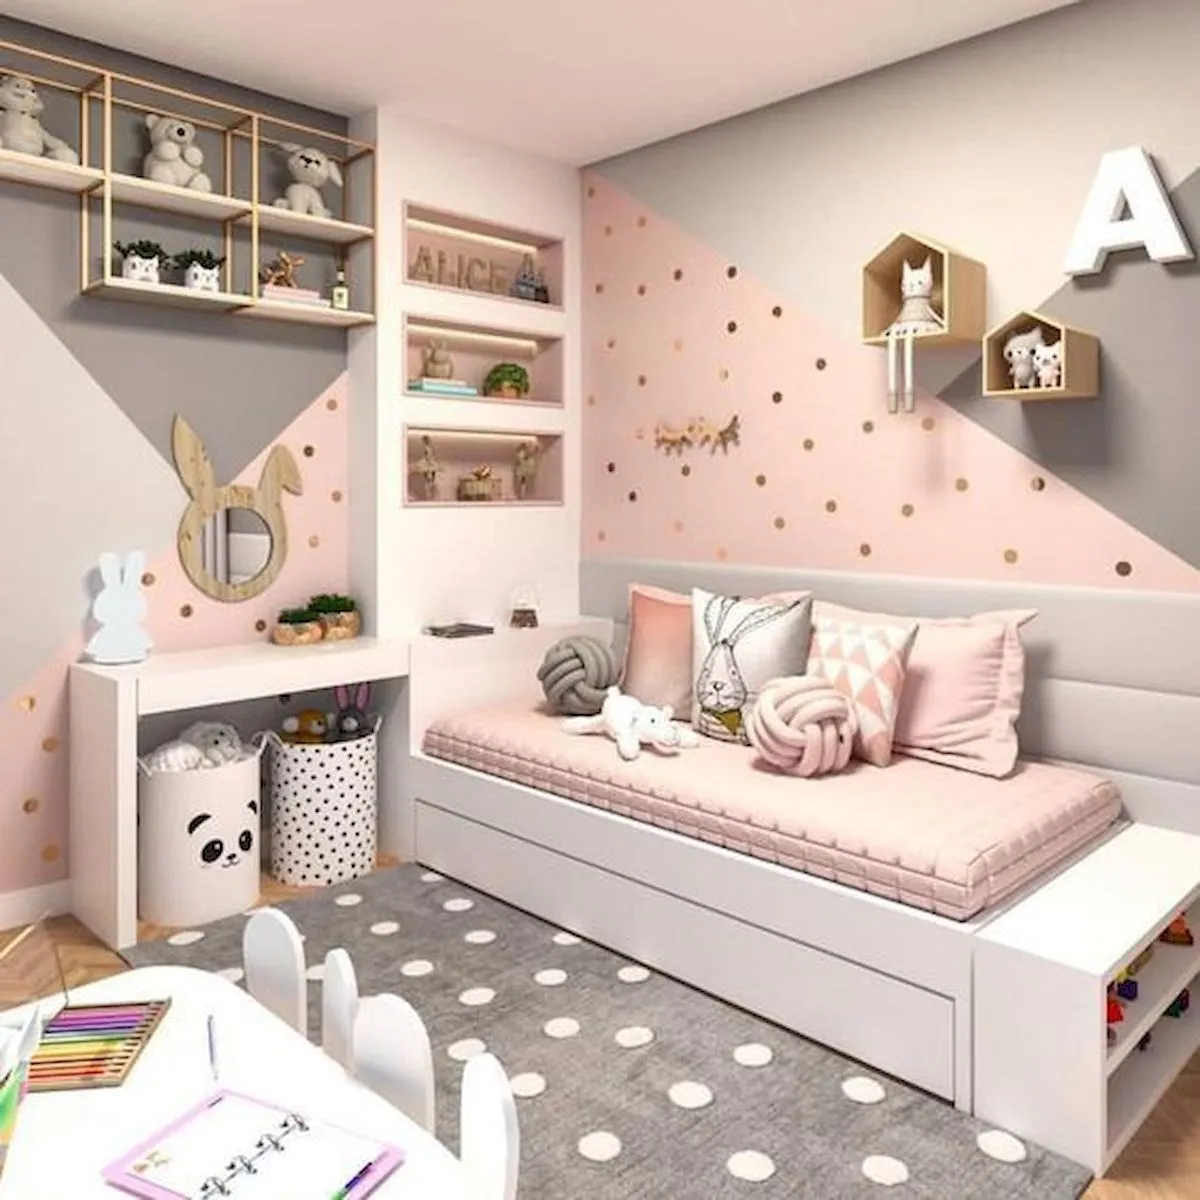 Mẫu phòng ngủ đẹp cho bé gái 15 tuổi cho chung cư đơn gian tông hồng